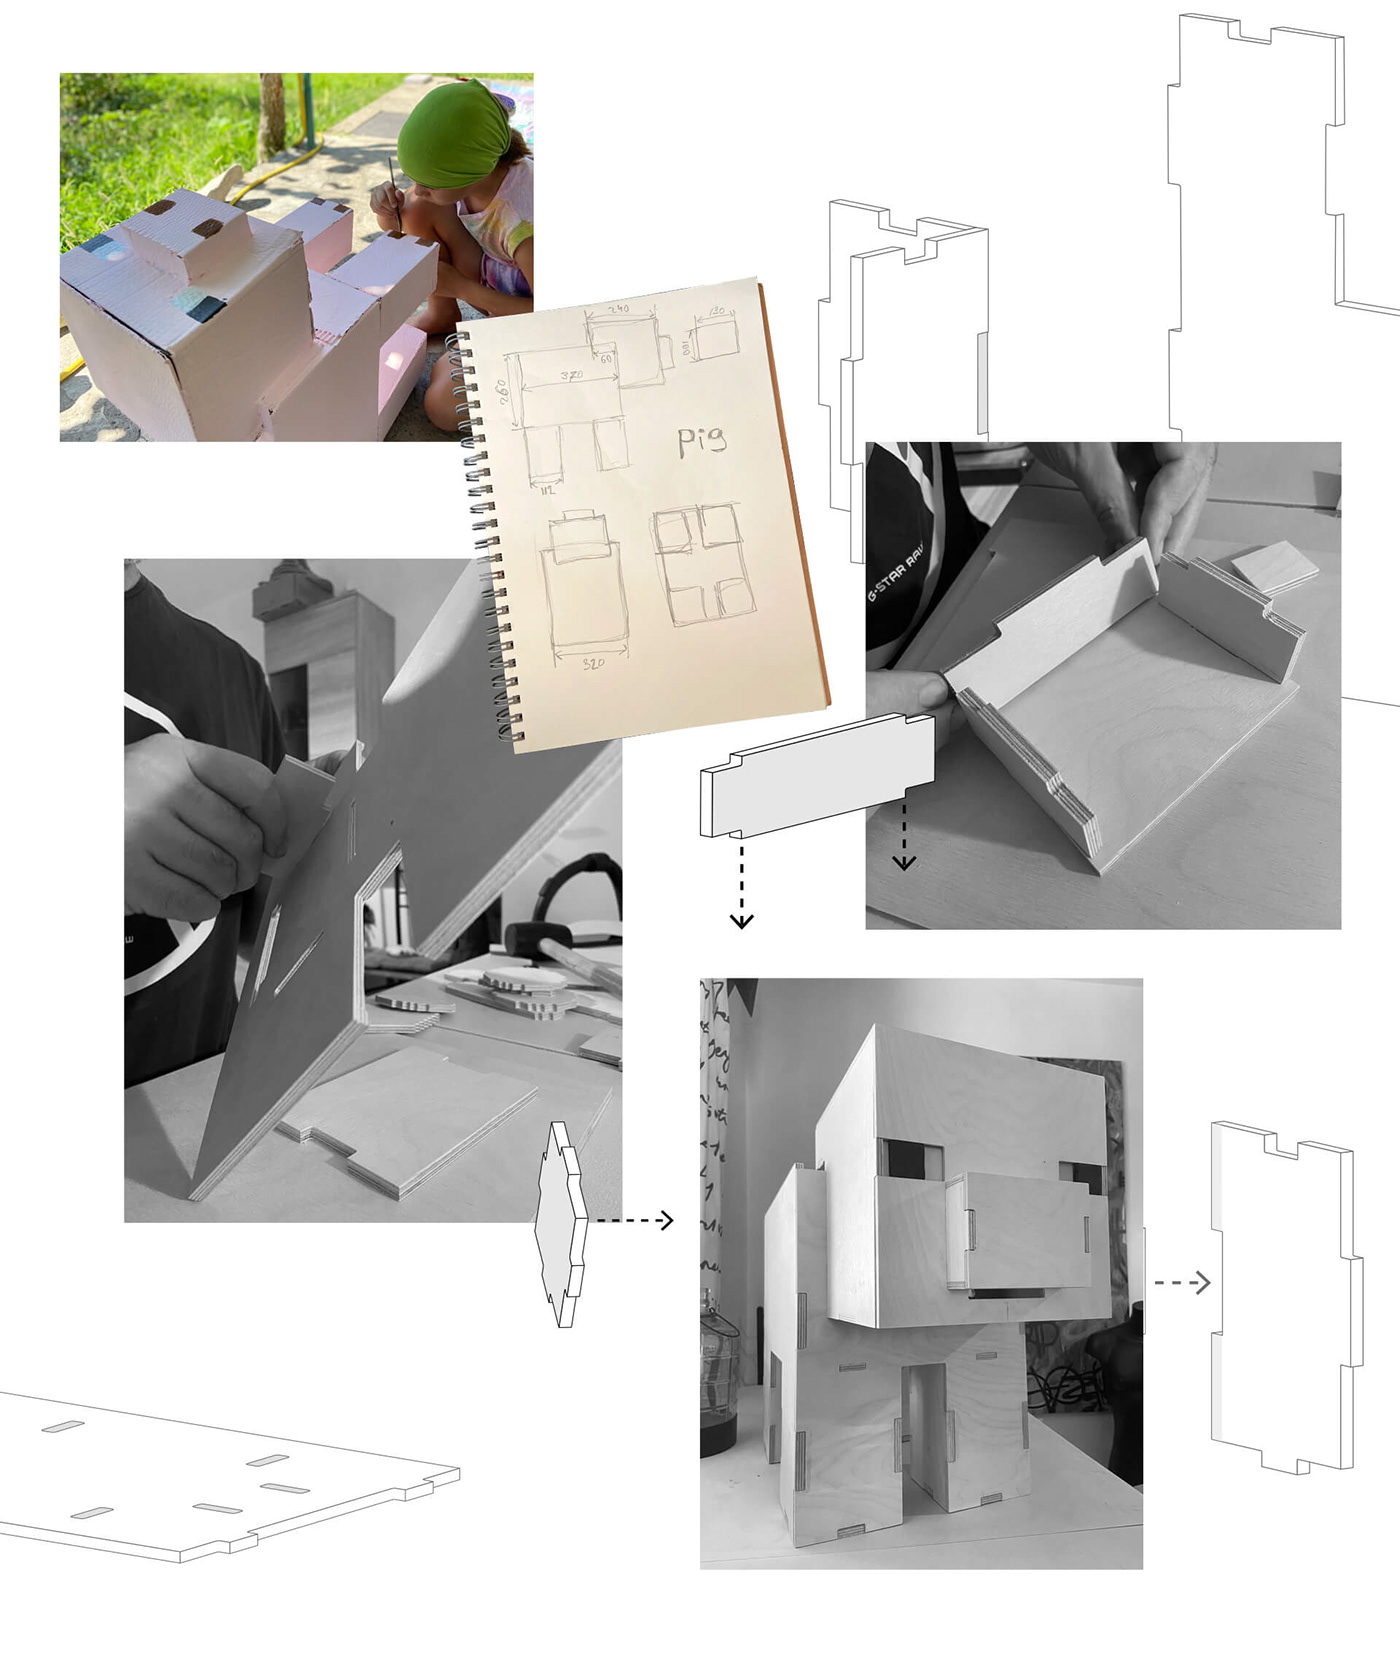 design furniture Interior kids minecraft Notch pig pixel plywood toy